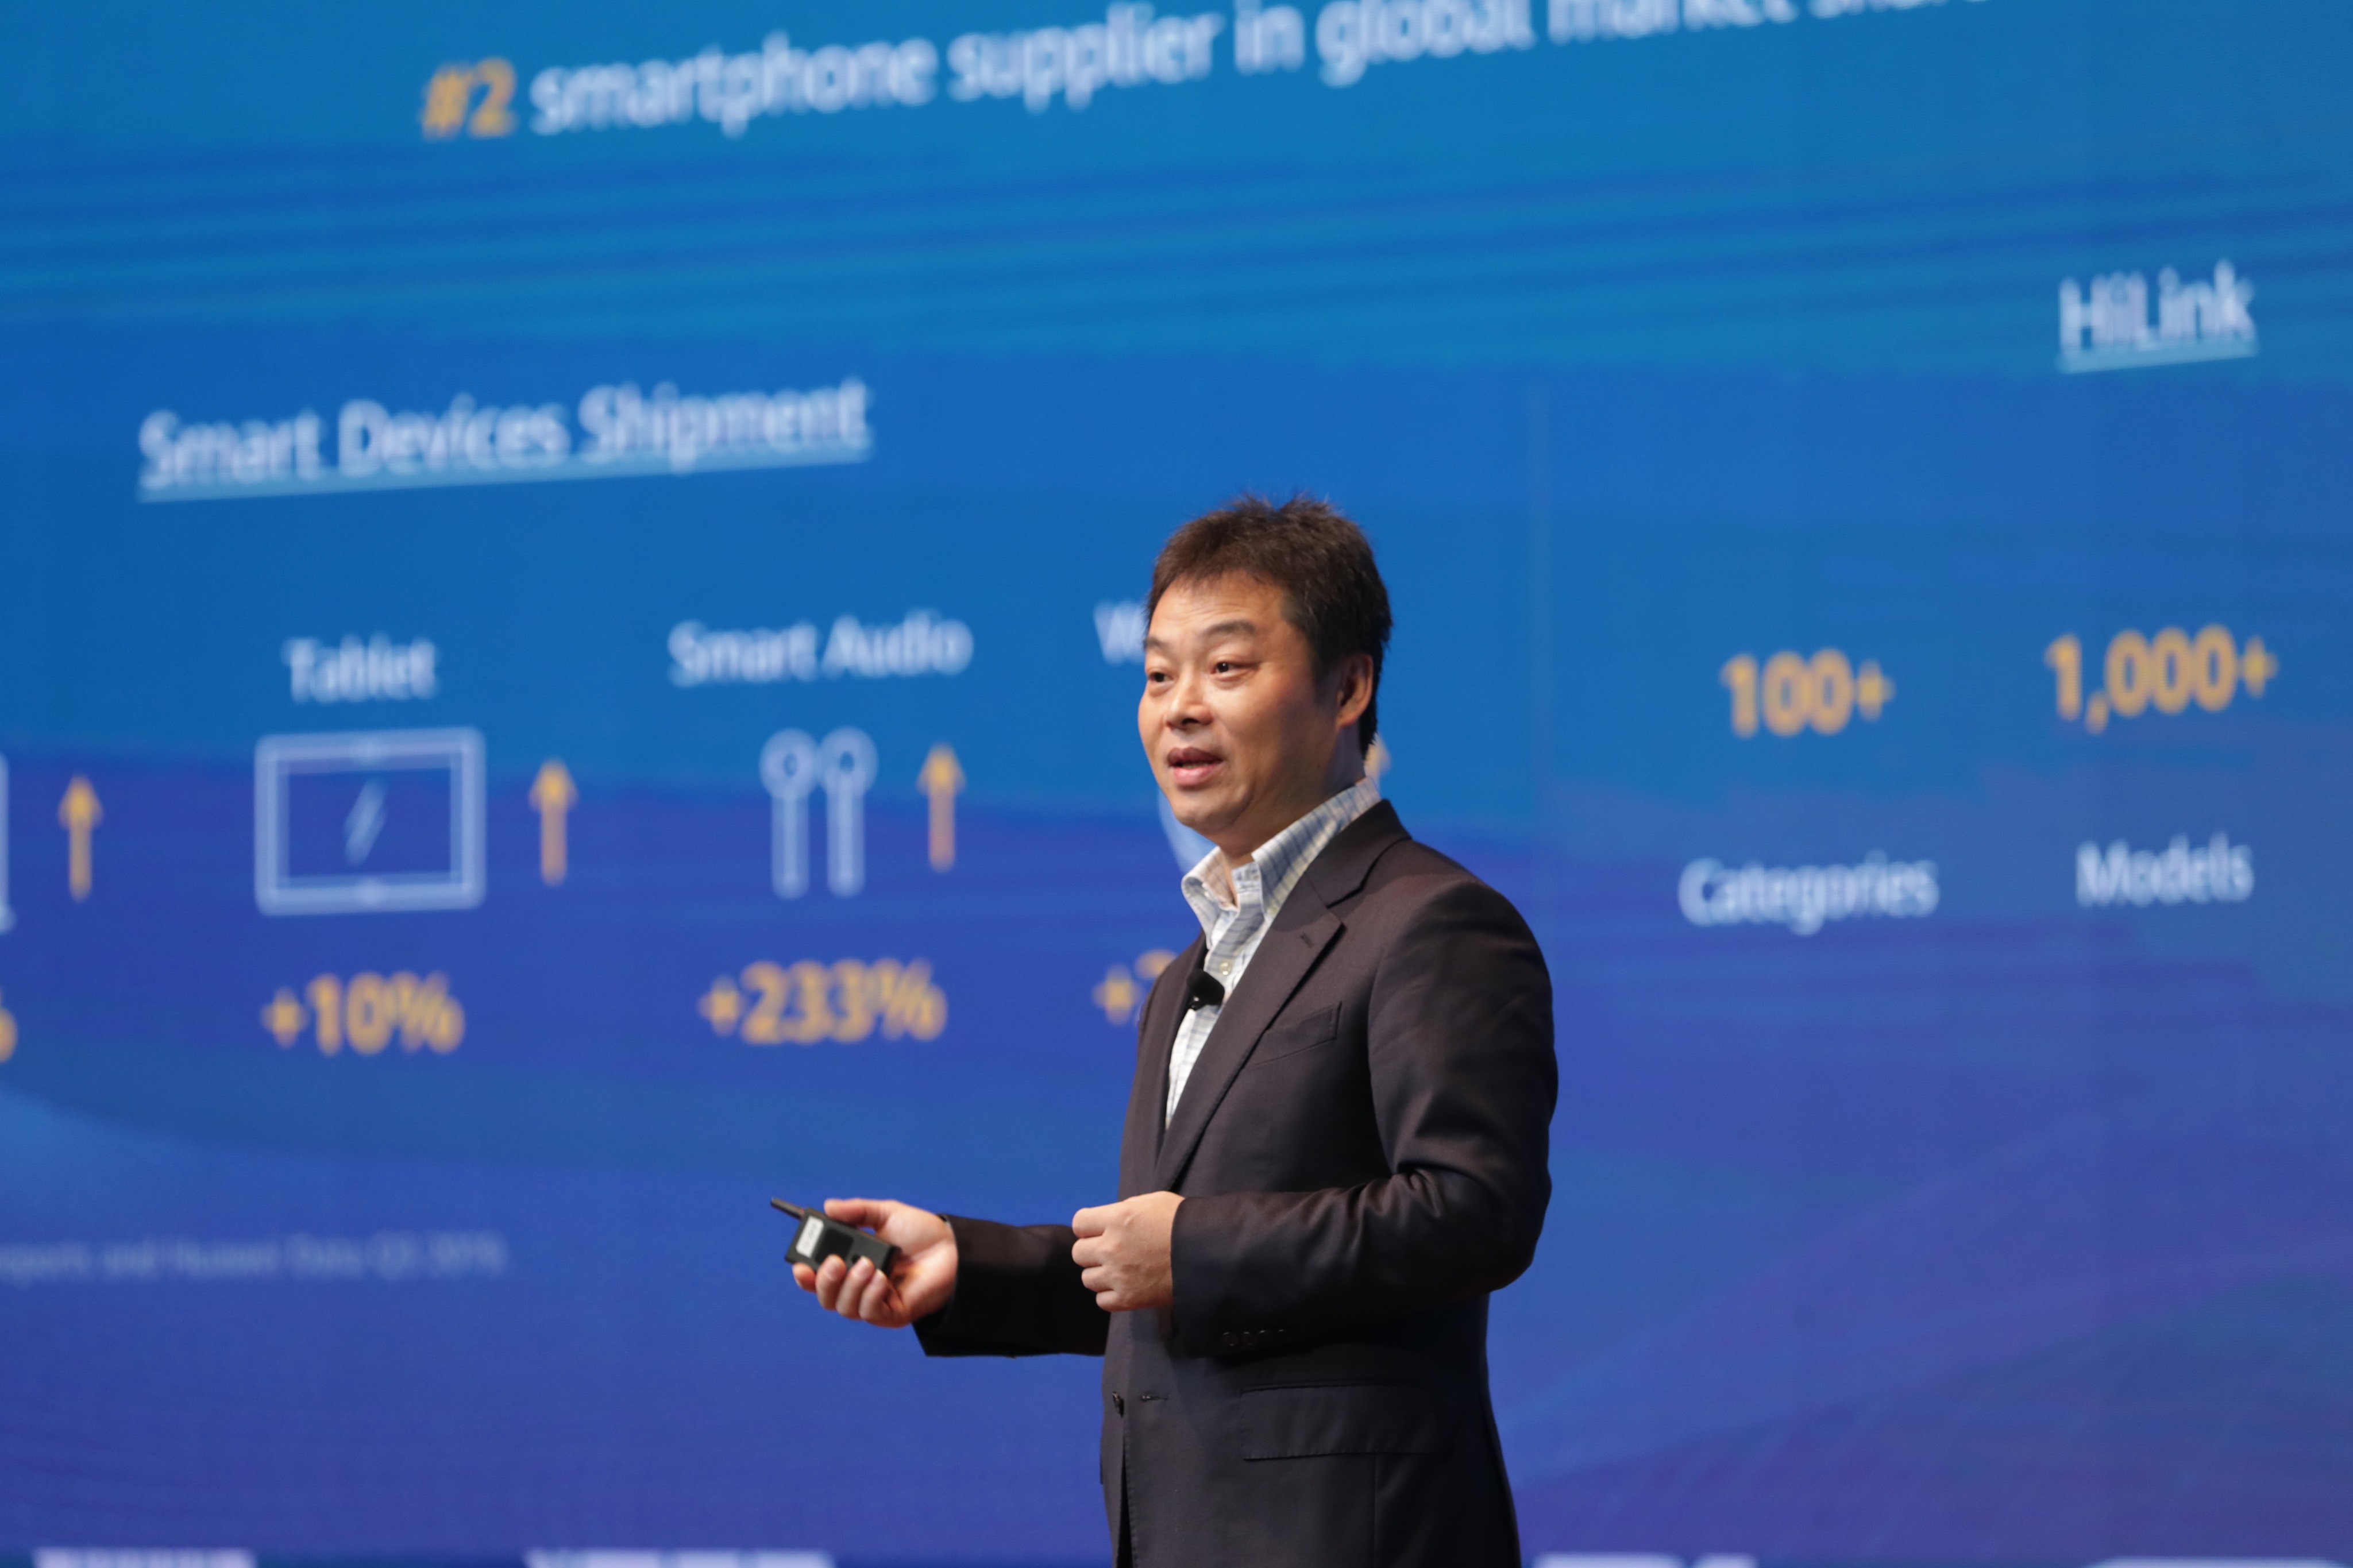 Huawei công bố đầu tư 1 tỷ đô-la vào Hệ sinh thái Huawei tại Ngày hội Nhà phát triển Huawei châu Á - Thái Bình Dương 2019